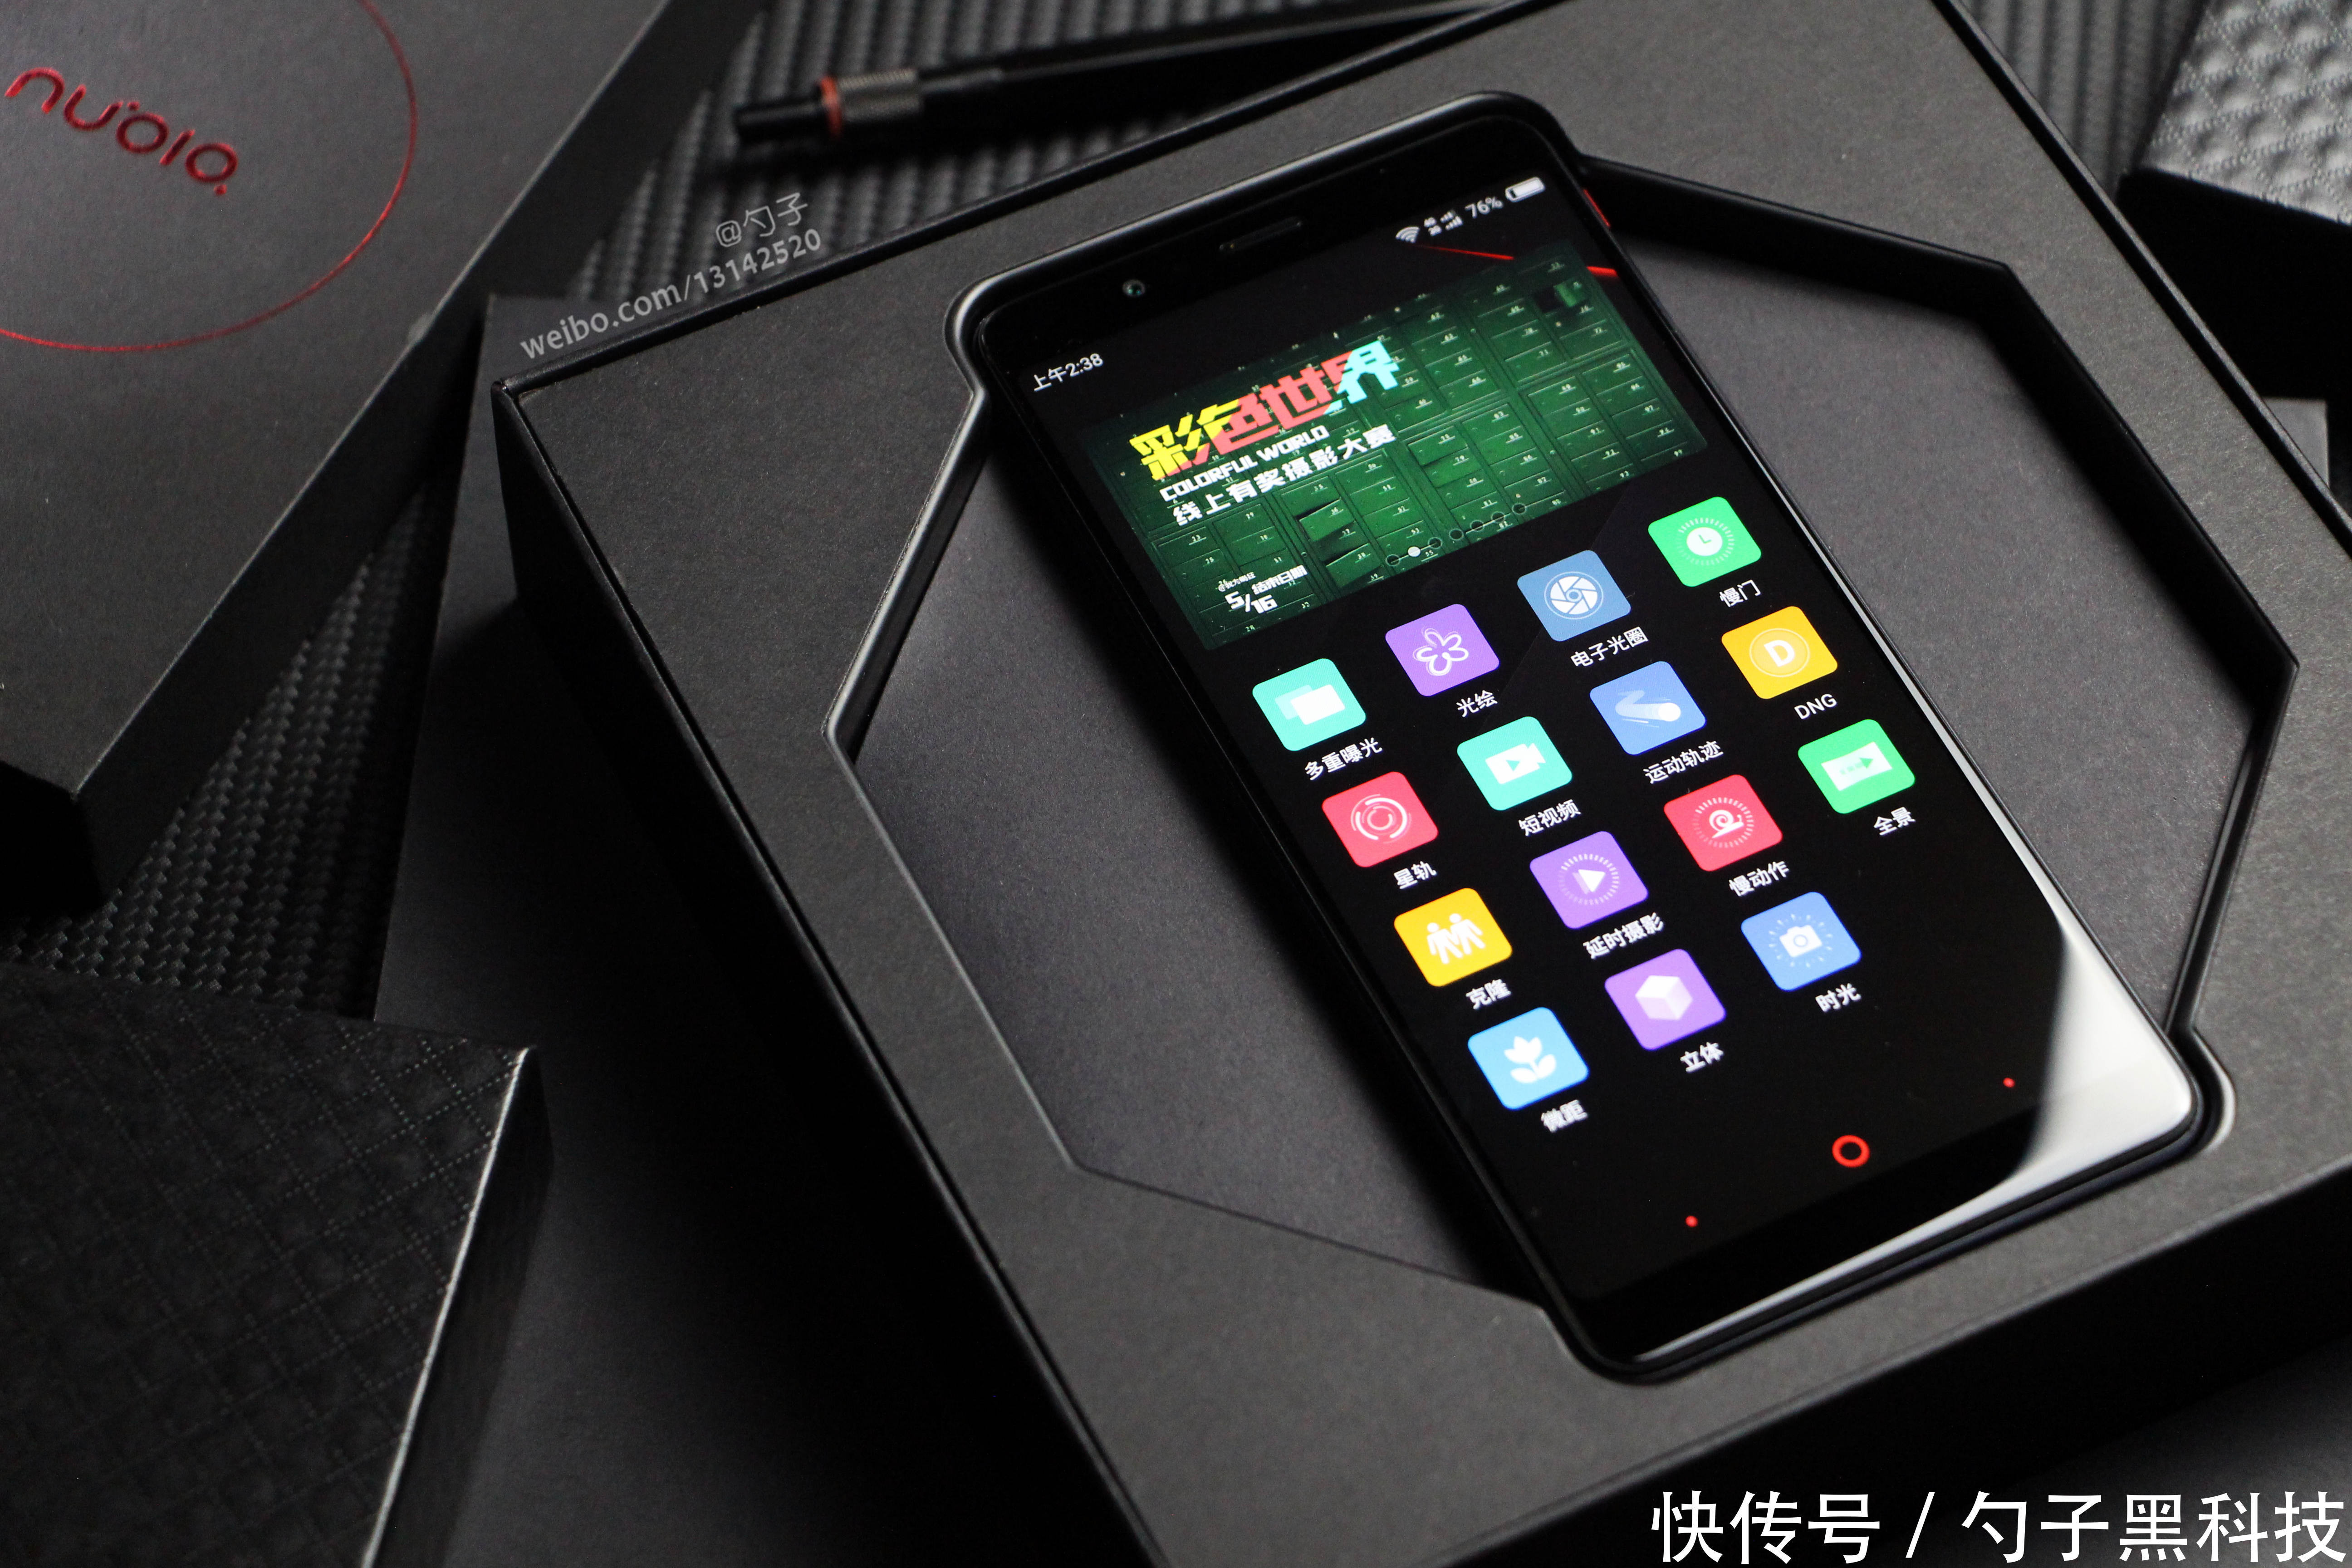 努比亚红魔电竞游戏手机，从设计到性能都帅到没有朋友的存在!